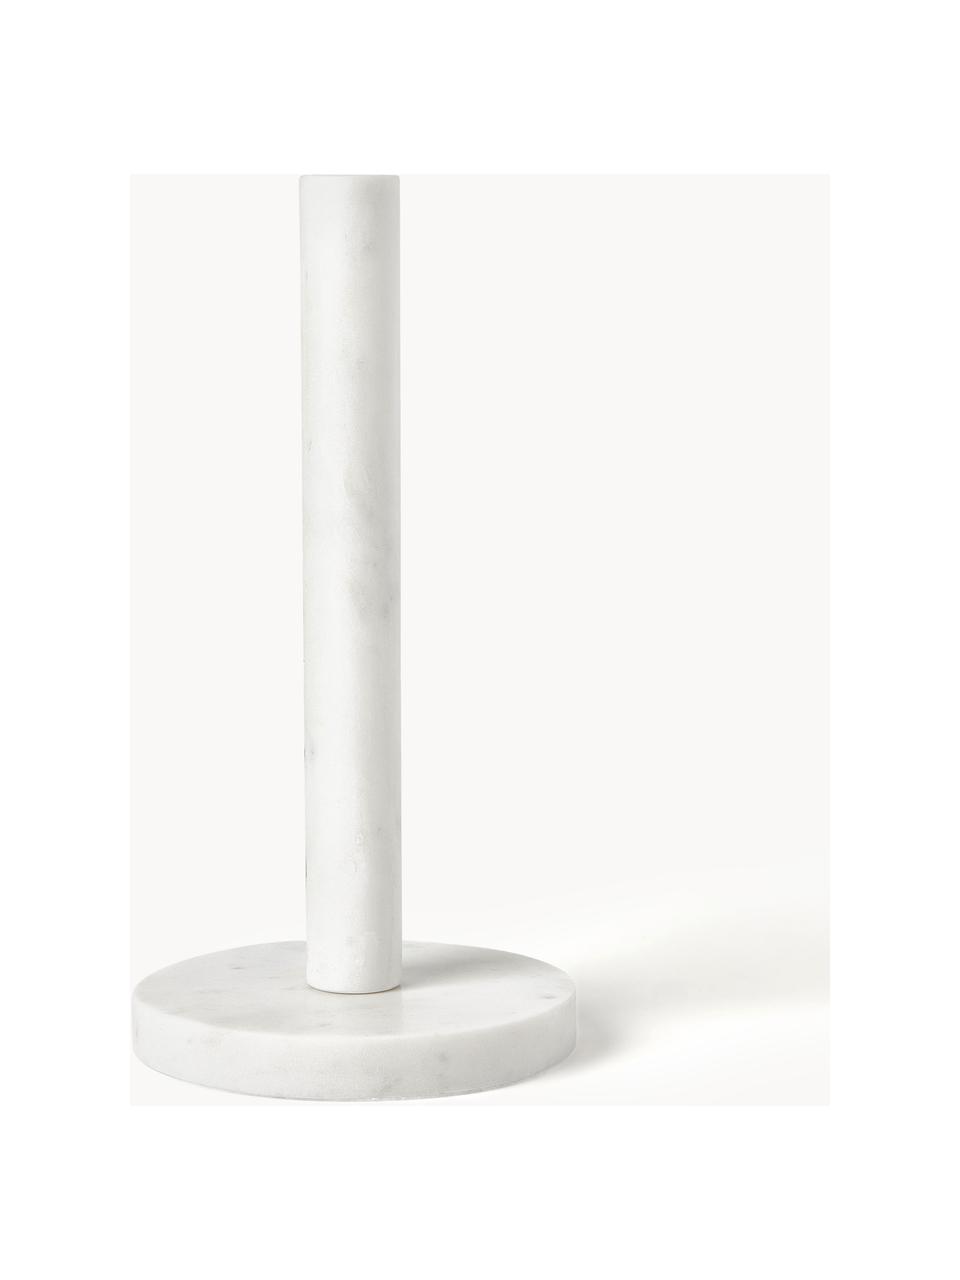 Portarotolo da cucina in marmo Agata, Marmo, Bianco marmorizzato, Ø 15 x Alt. 30 cm